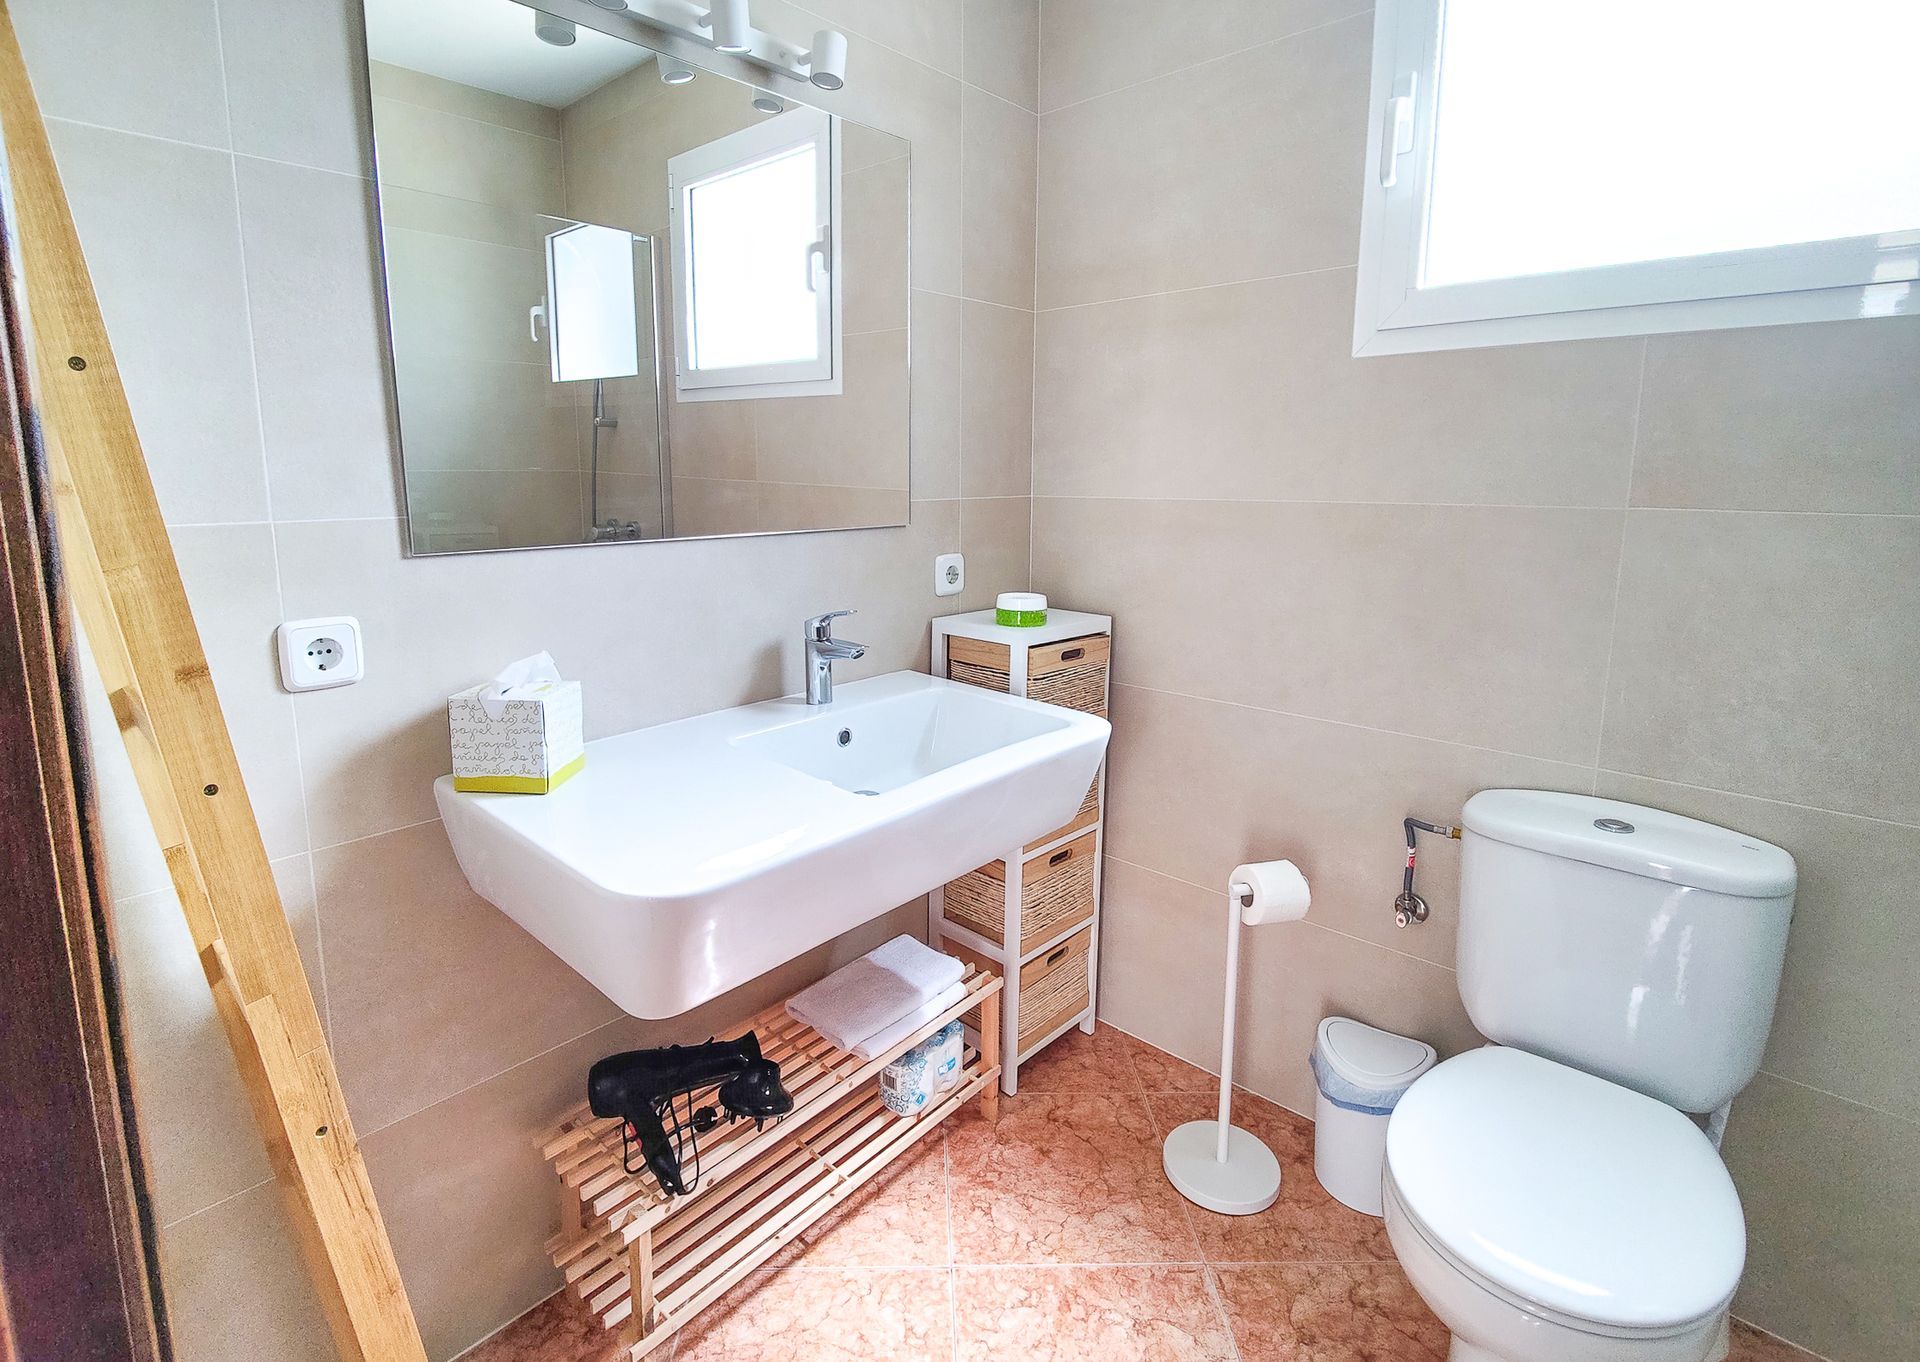 2ª Foto del baño de Villa Mascaró, casa de alquiler de vacaciones en Menorca. 